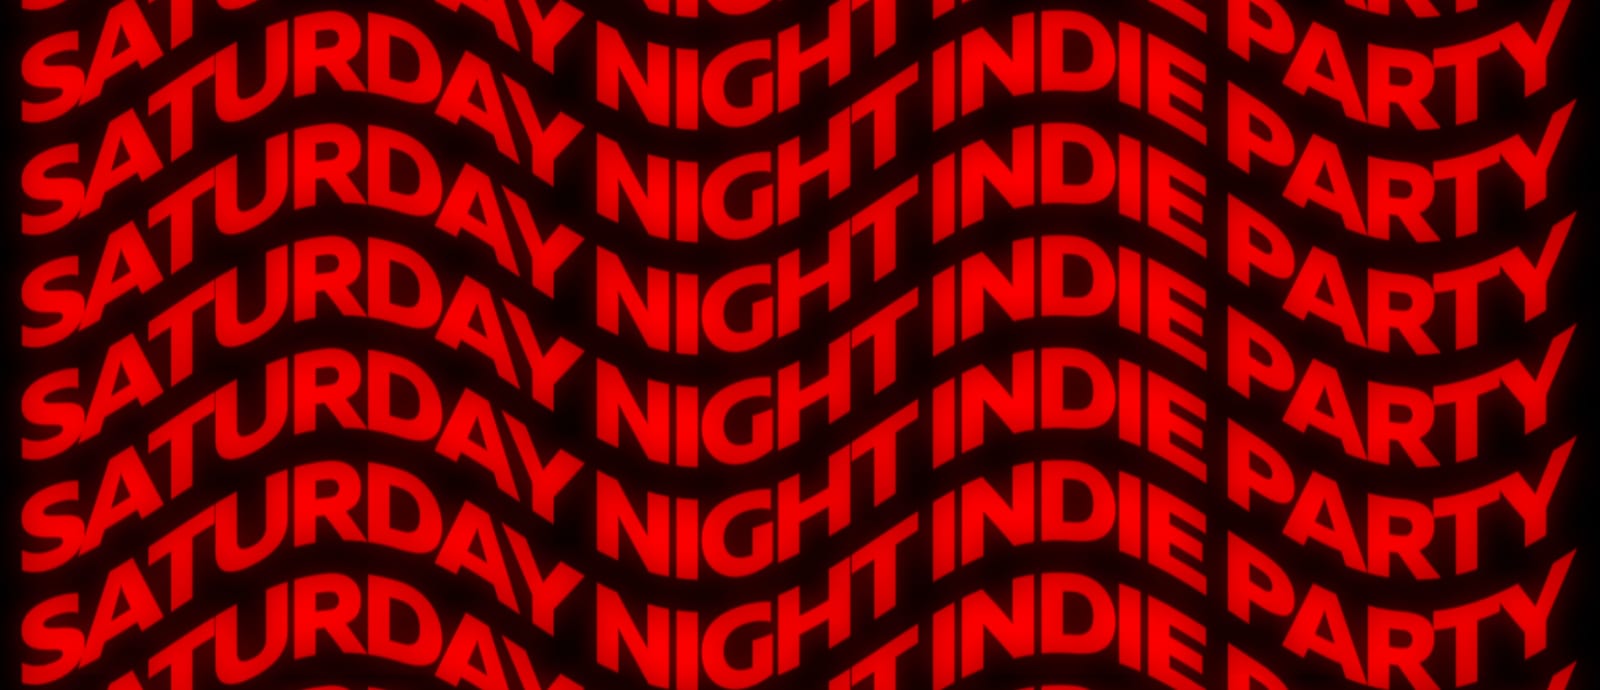 SNIP – Saturday Night Indie Party